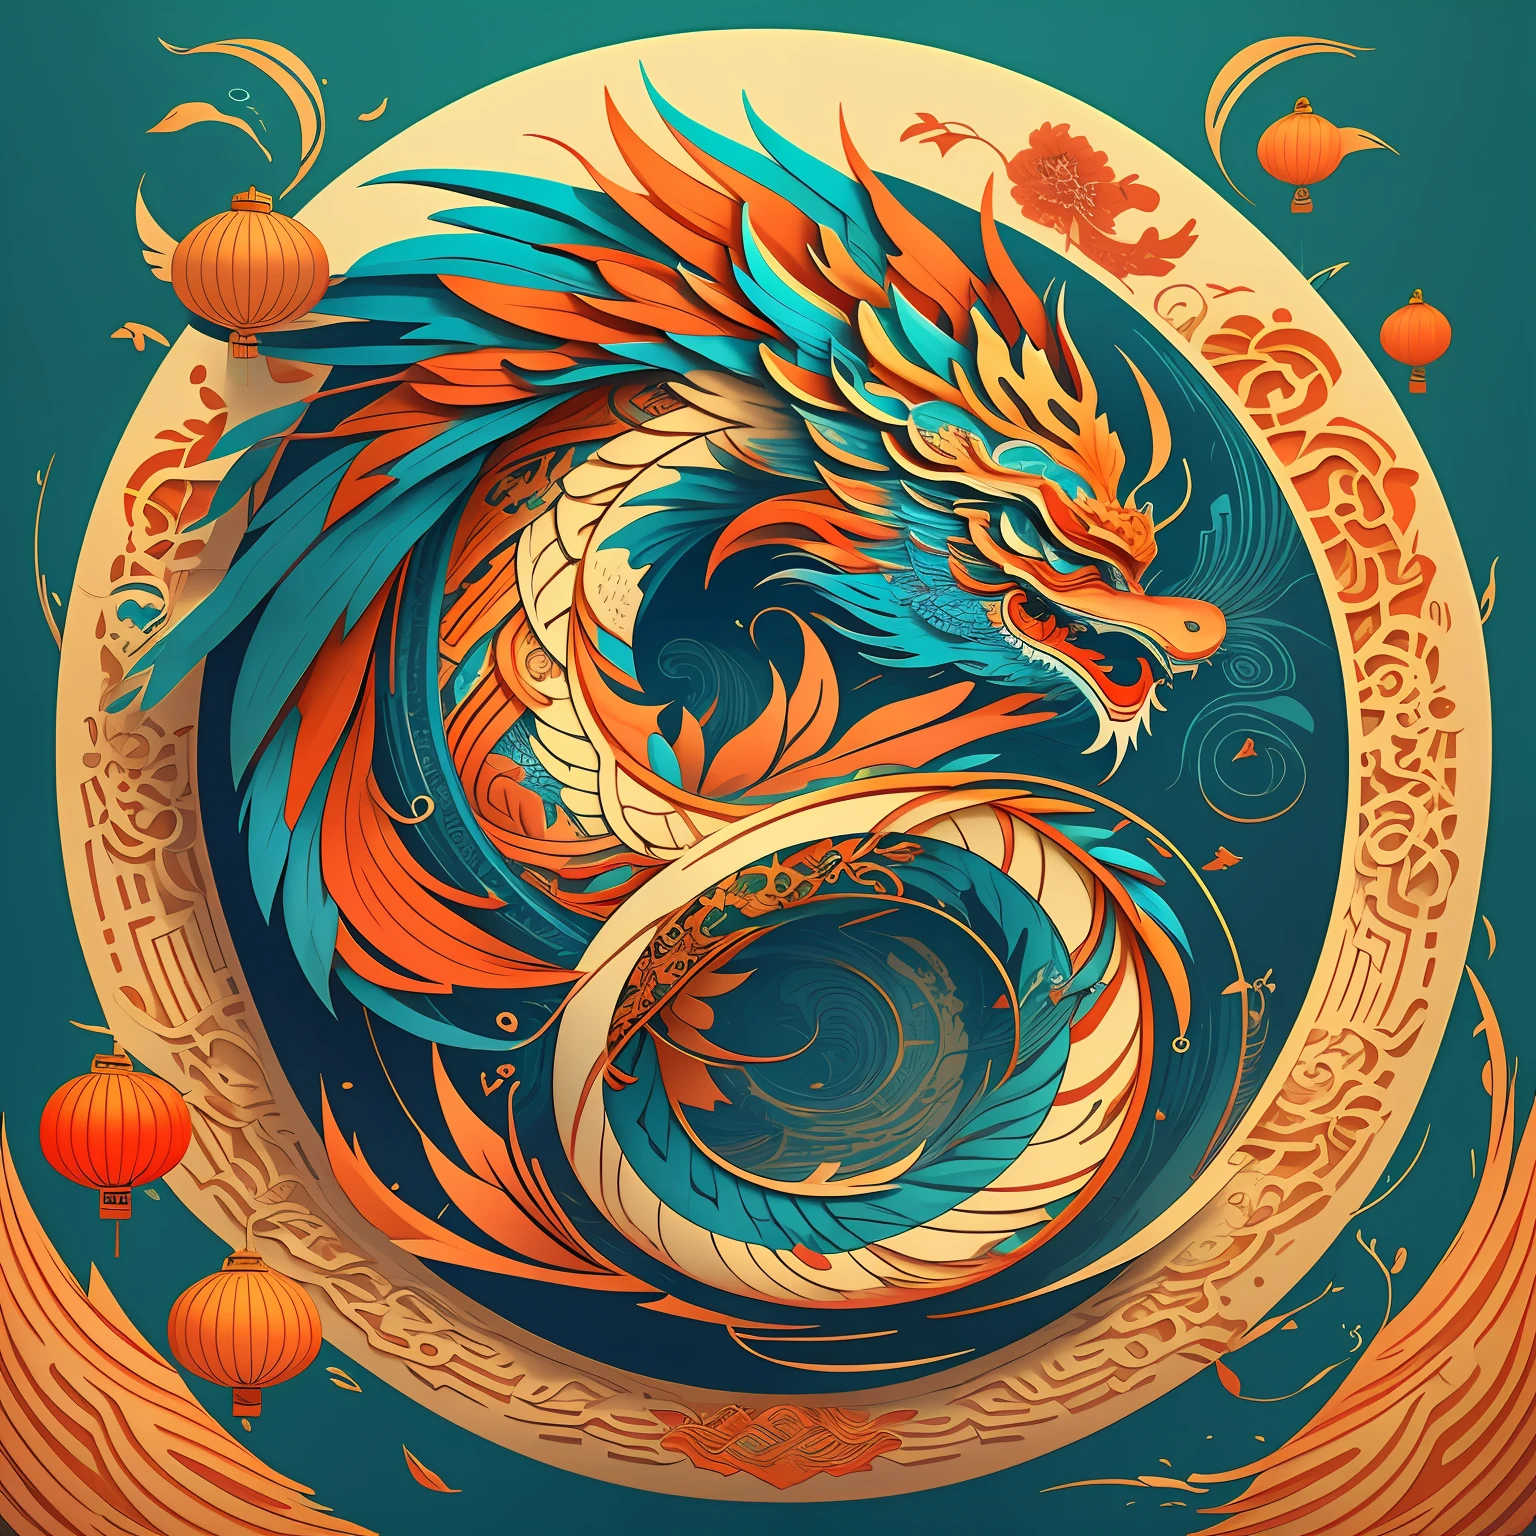 Elegante logotipo moderno del dragón chino presentado en arte vectorial，con una paleta de colores vibrantes y detalles intrincados，Crea formas llamativas。